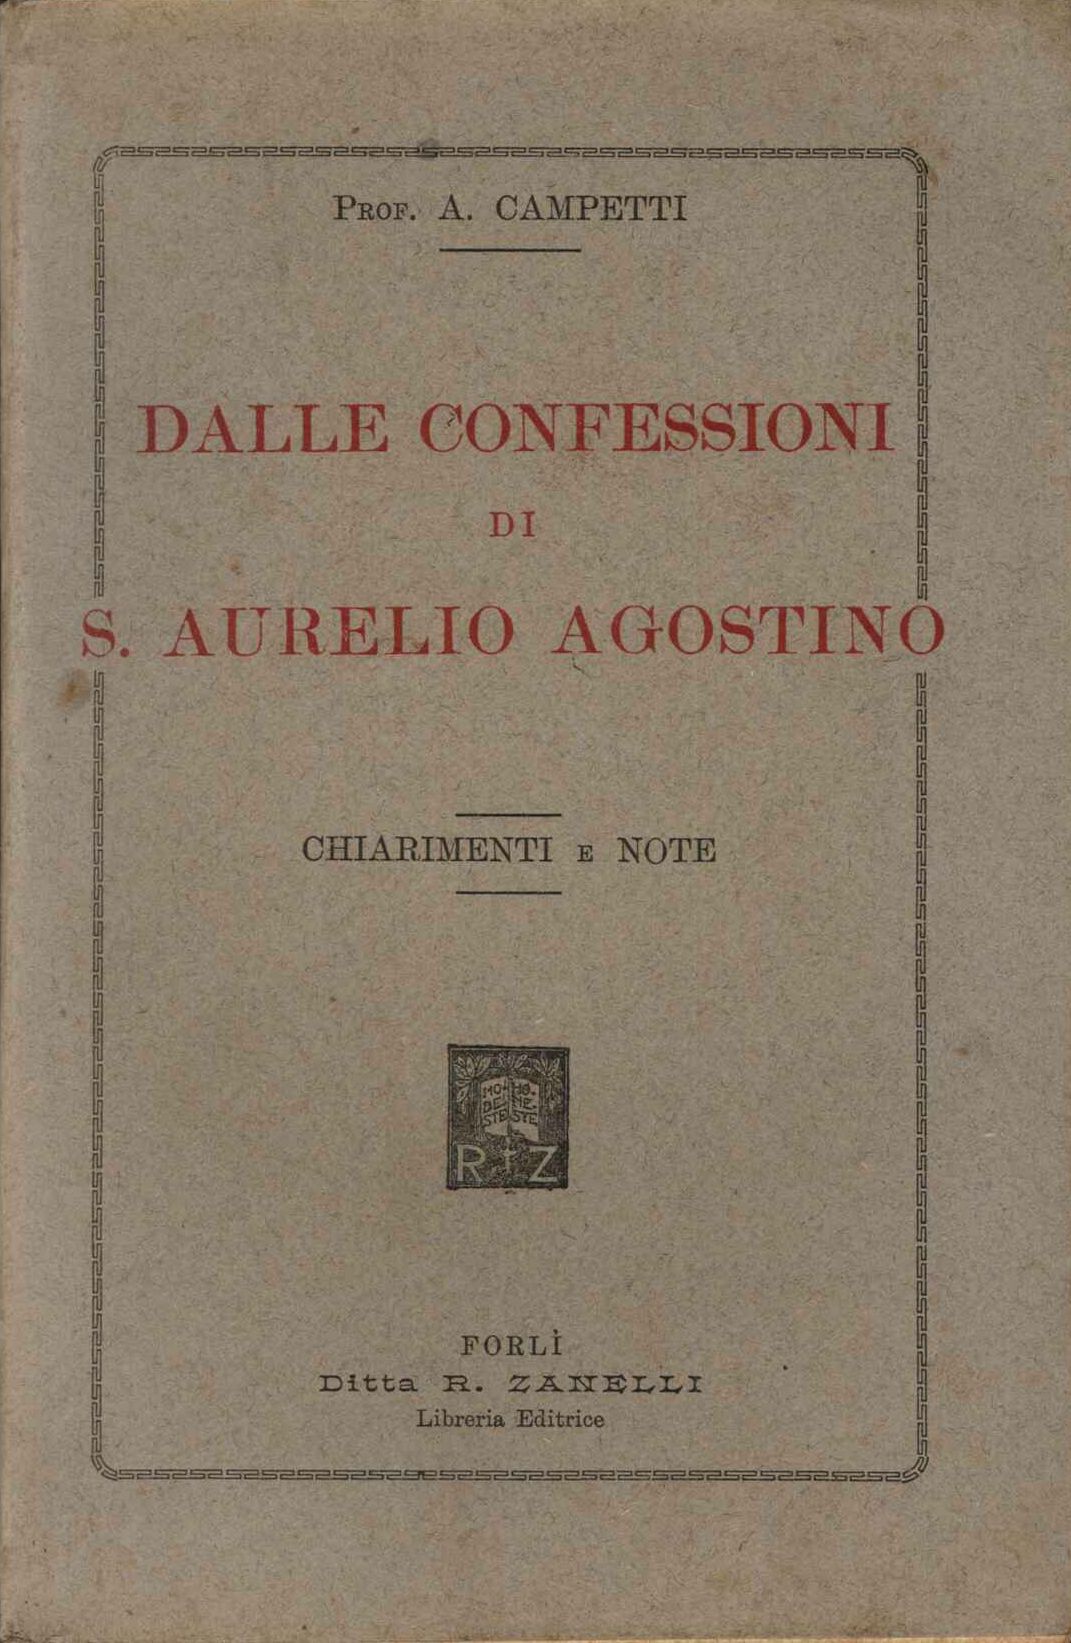 Dalle confessioni di S. Aurelo Agosino. Chiarimenti e note